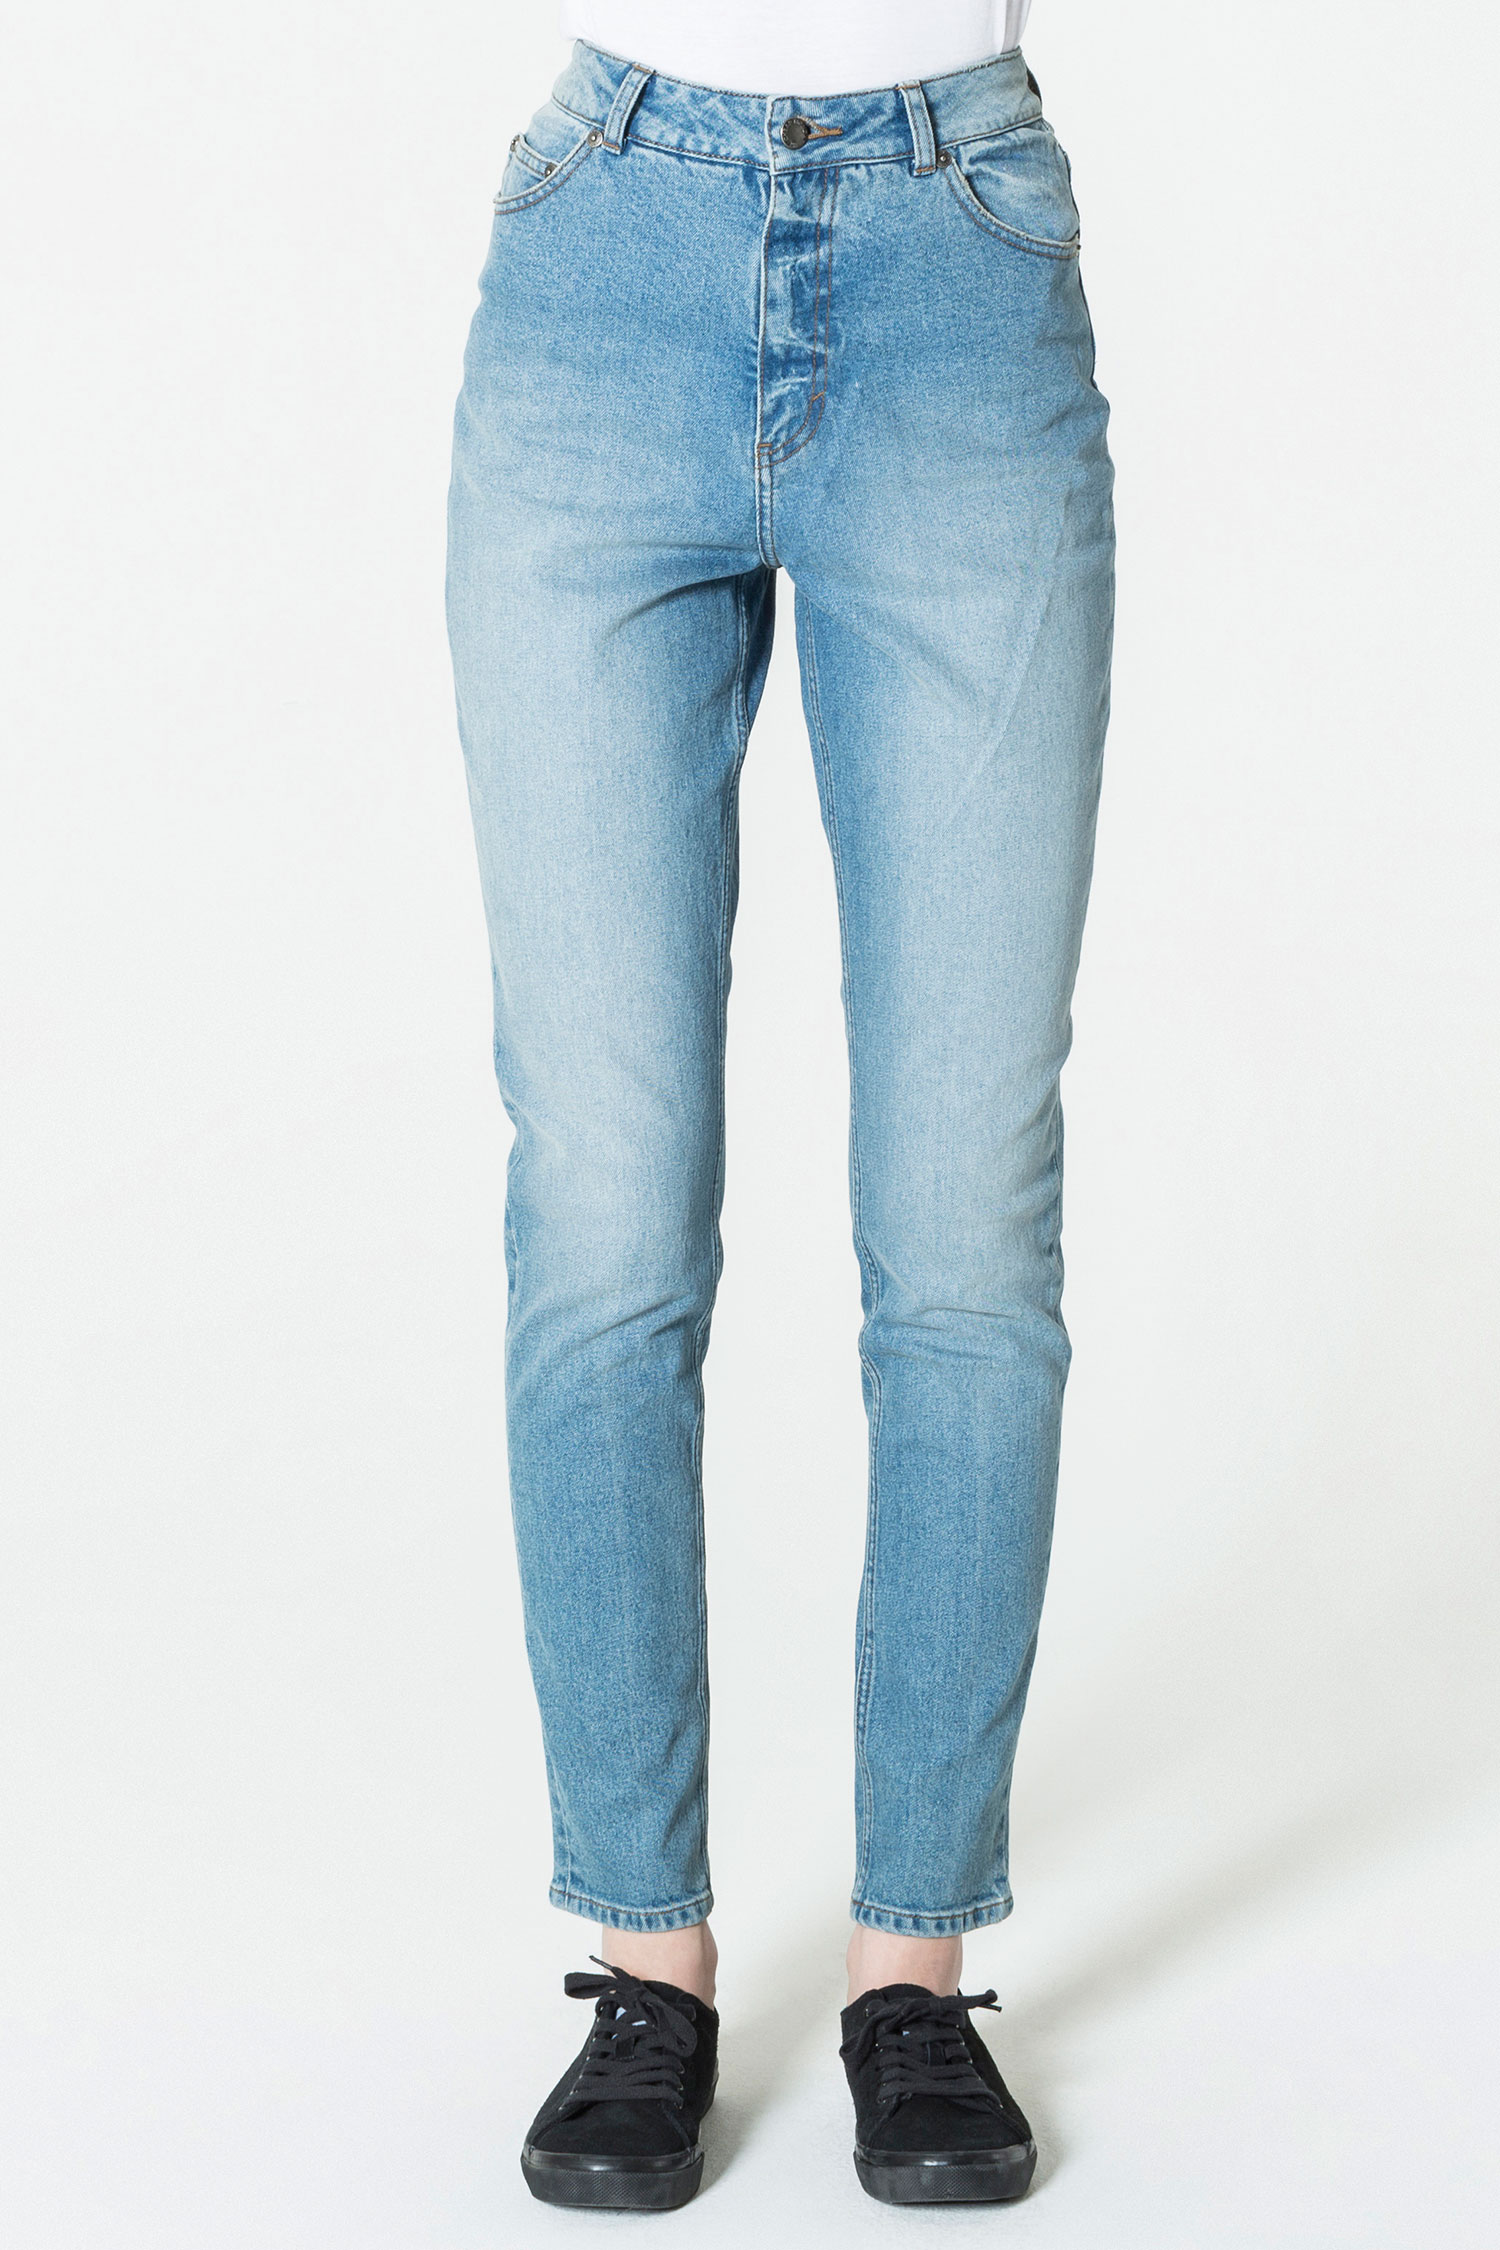 slim fit jeans - shop womenu0027s jeans online - cheapmonday.com uuuoebp